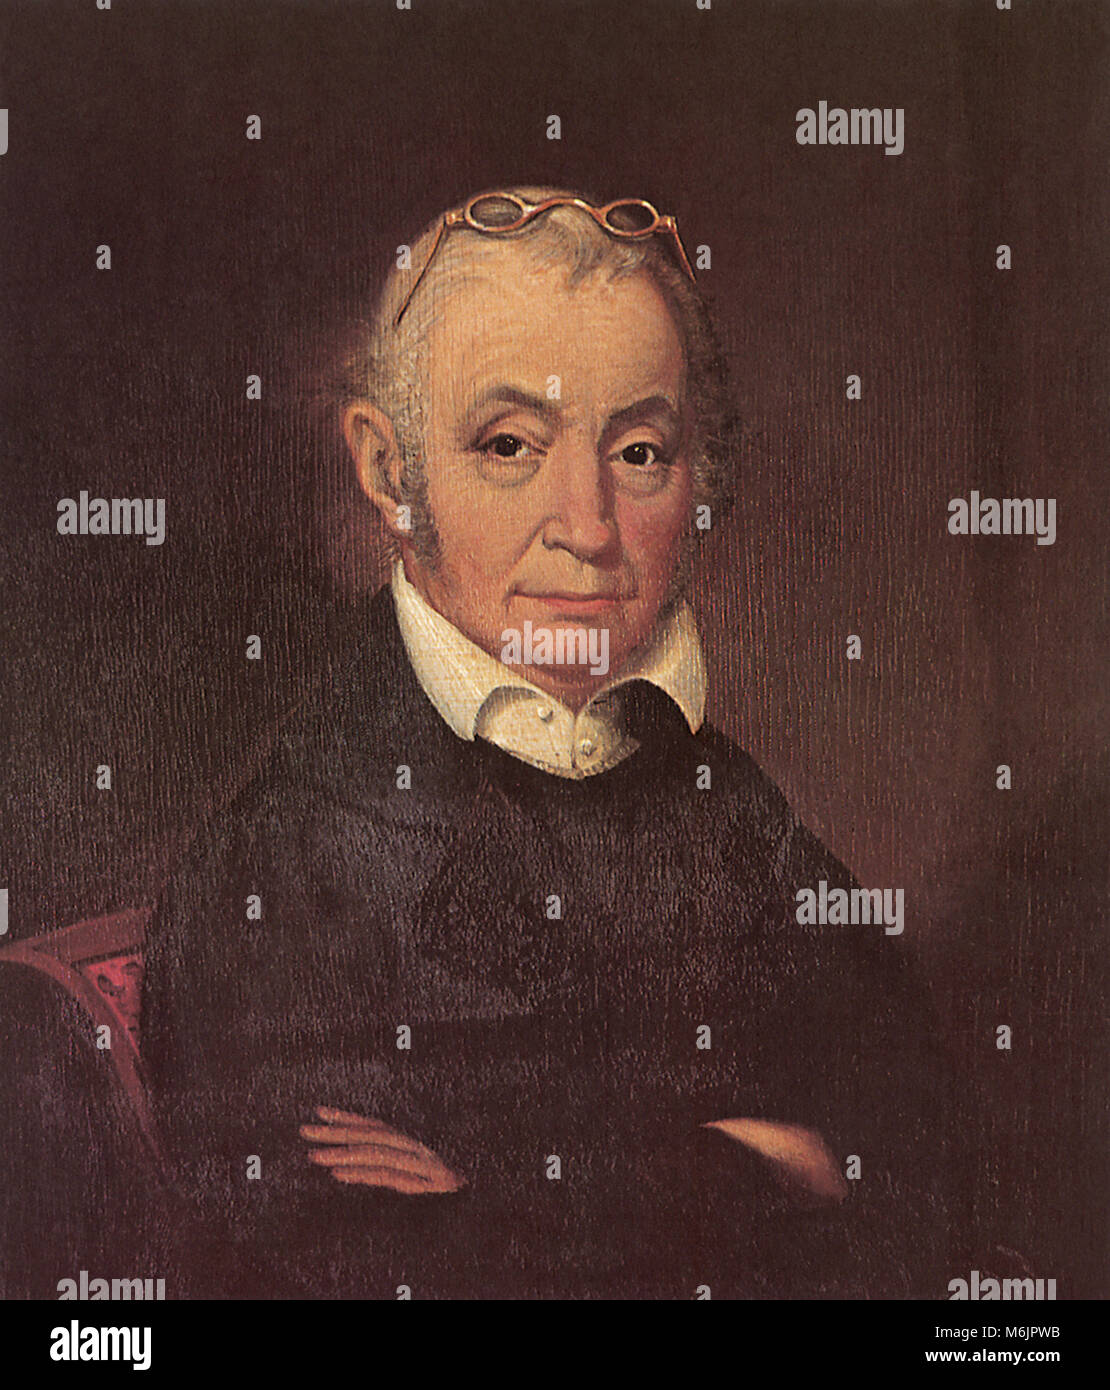 Aaron Burr 1834, Dyke, James Van, 1834. Stock Photo